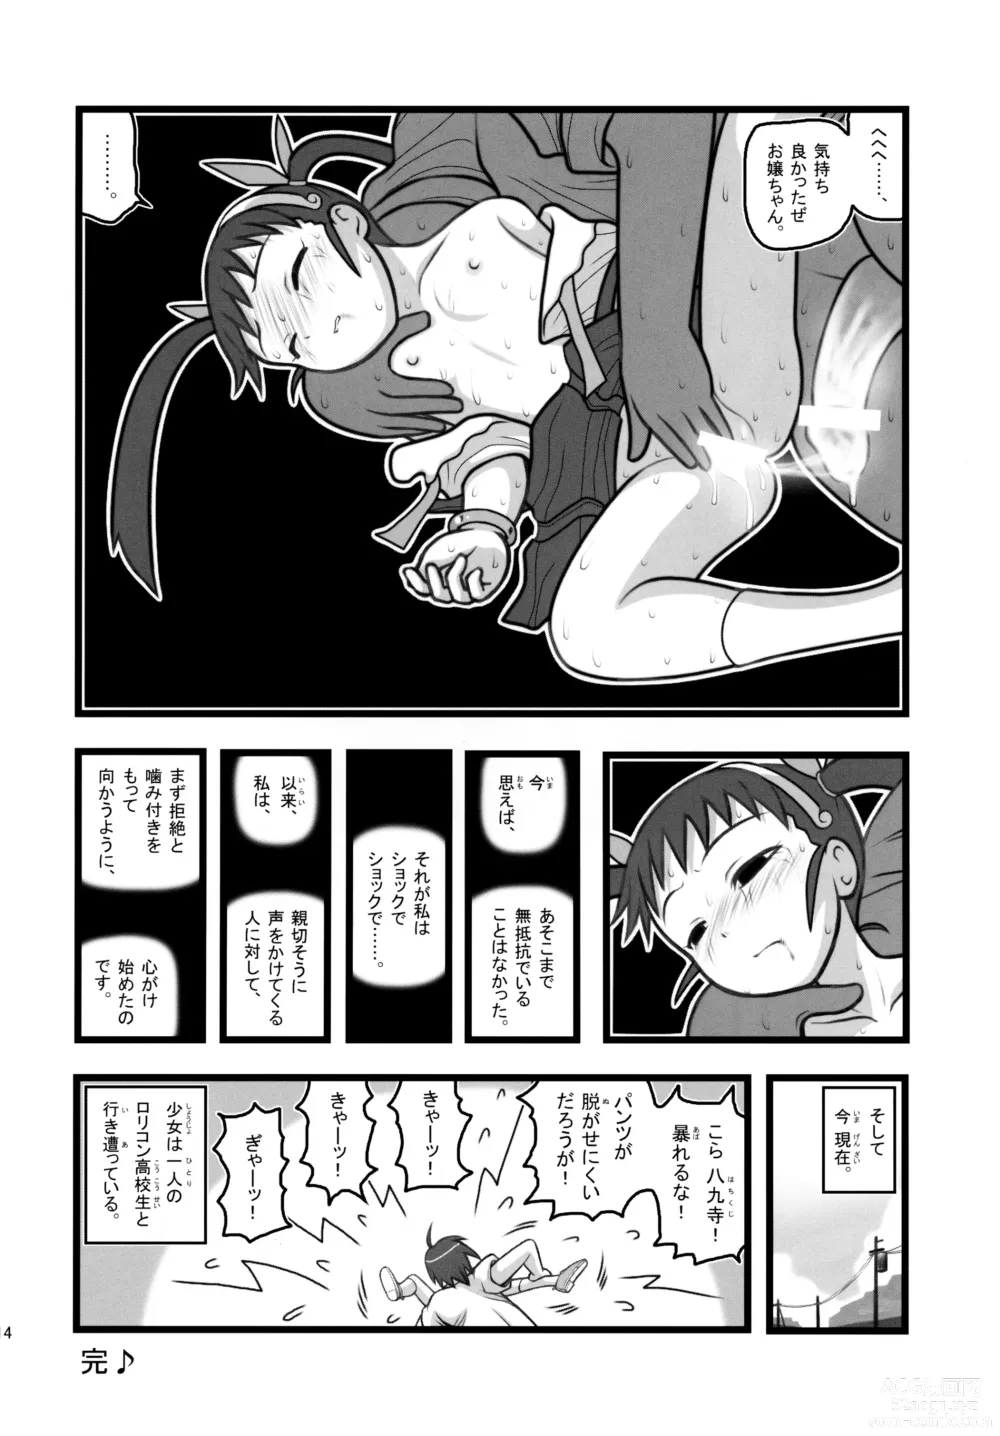 Page 14 of doujinshi Ryoujoku Hachikuji Mayoi Gonensei A